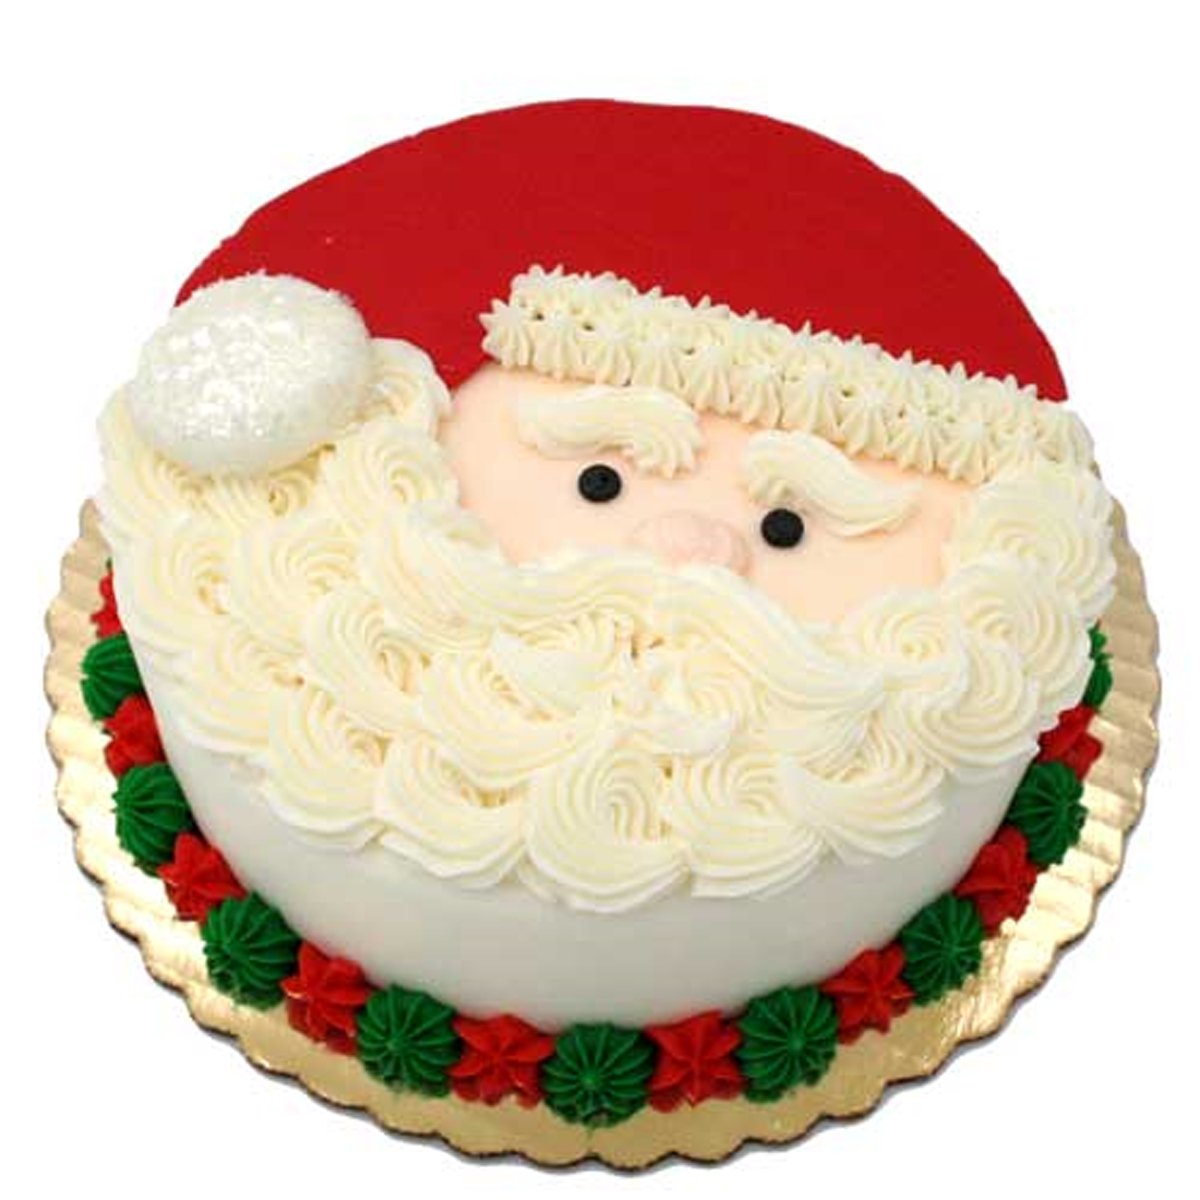 Santa Christmas Bed - The Great British Bake Off | The Great British Bake  Off